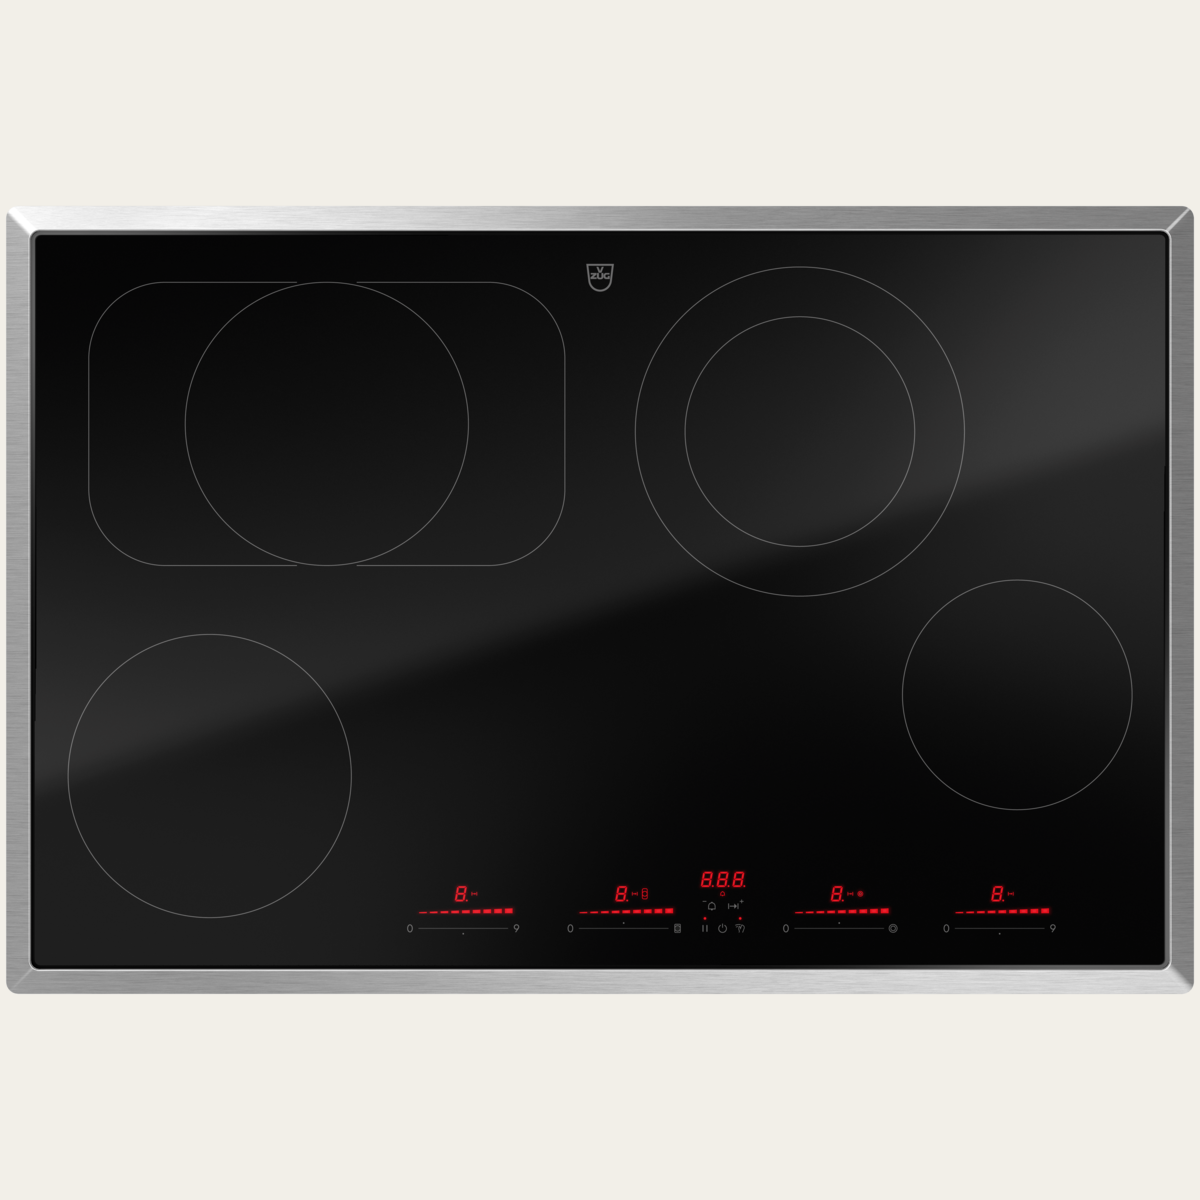 V-ZUG Hob CookTop V6000 A804B, radiant heating element, Standard width: 80 cm, BlackDesign, Chrome frame,Multi-Slider/direct selection, Slider control, Cooking zones: 4